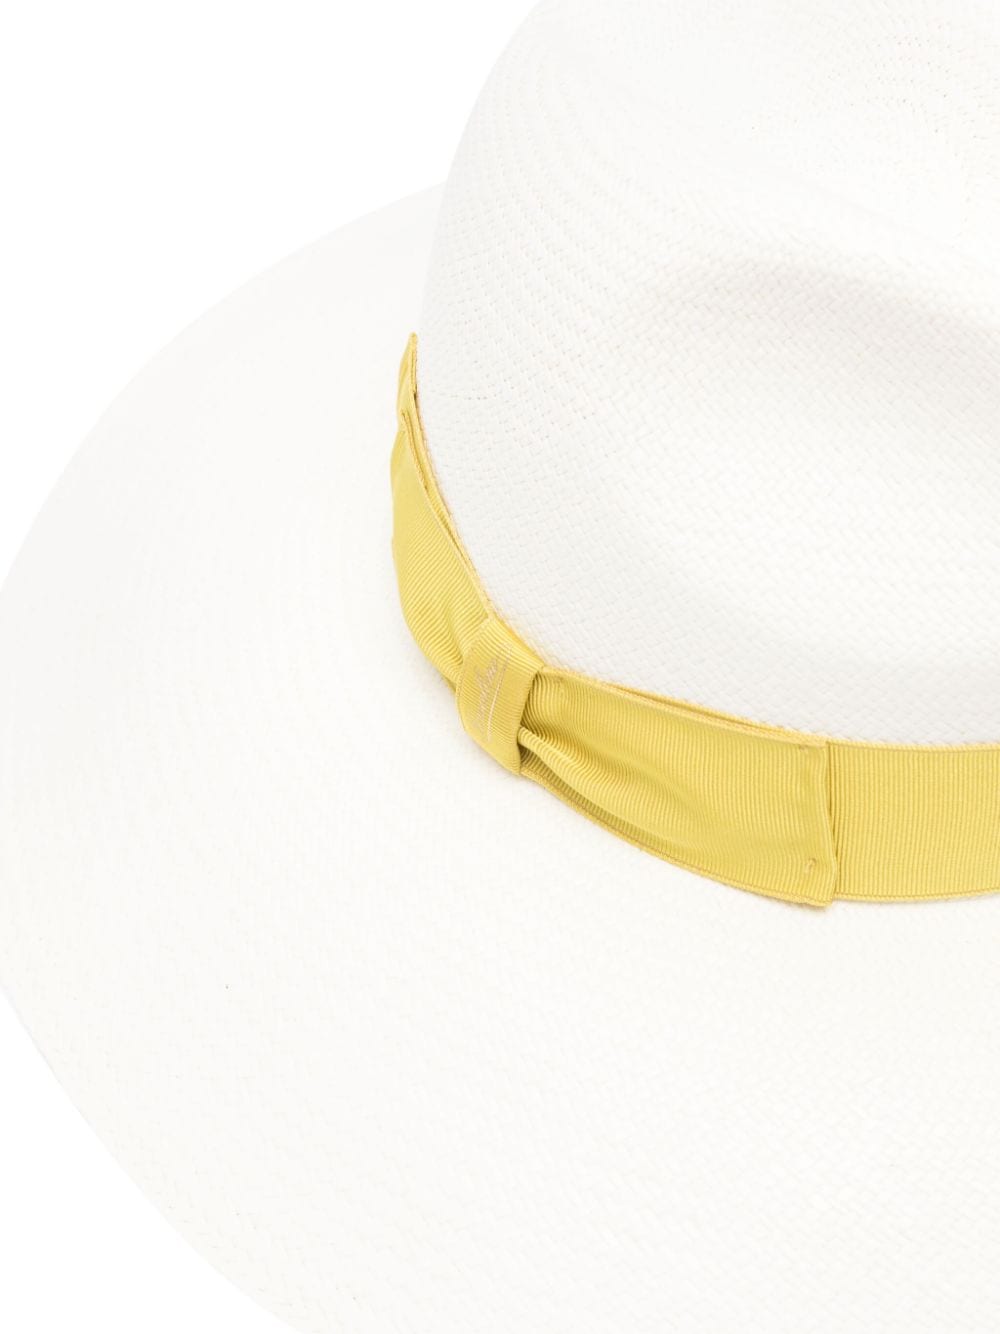 Borsalino Hats Yellow